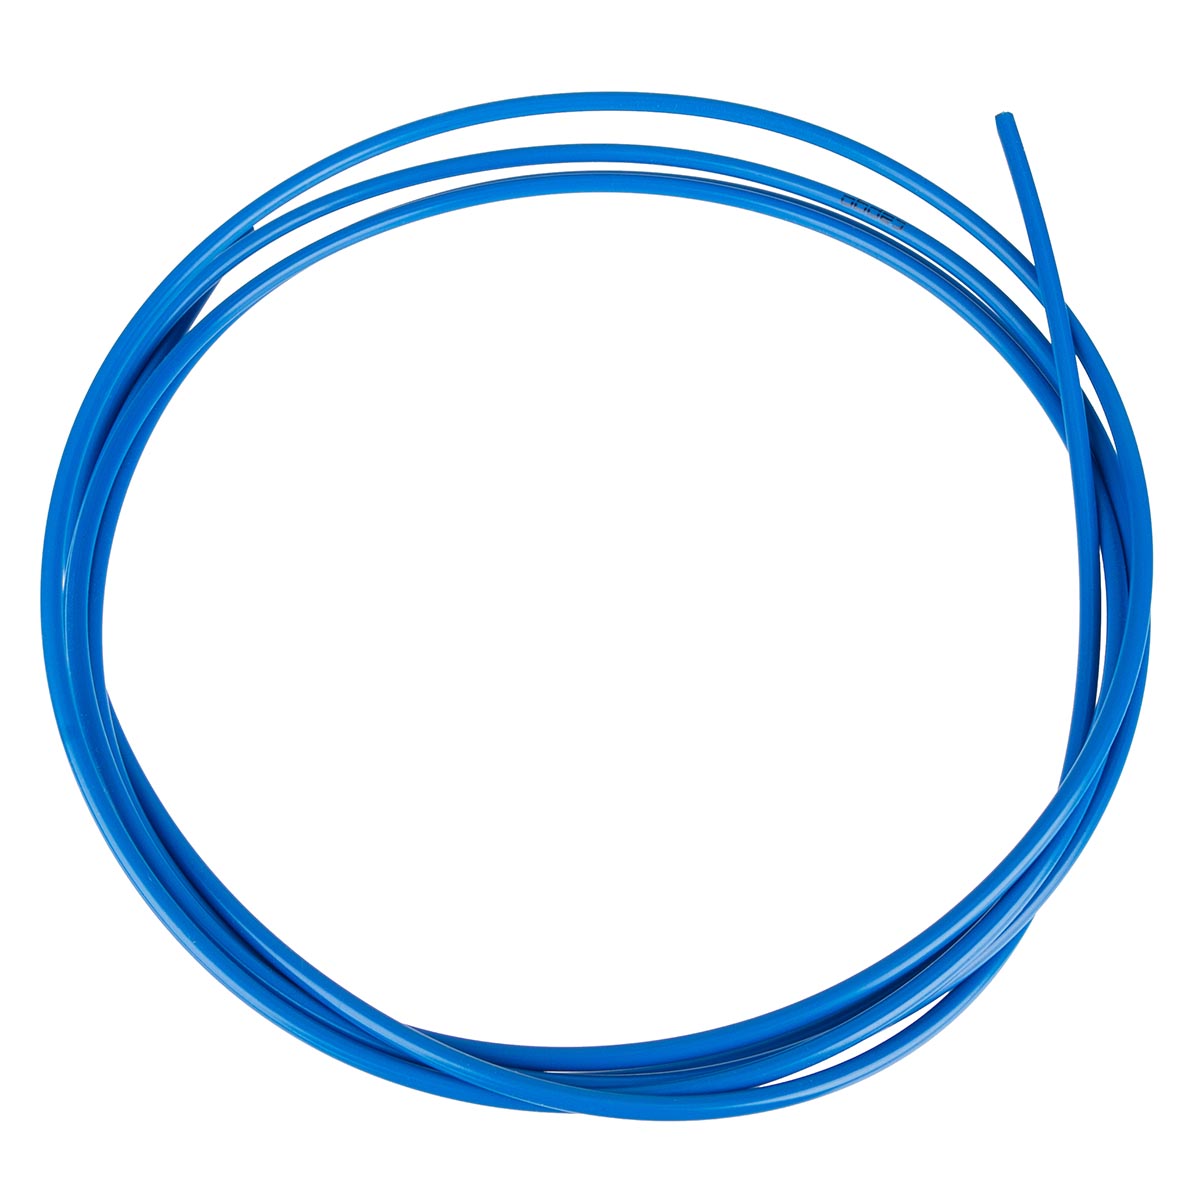 Capgo Cable Systems Gaine pour Câble Dérailleur Blue Line Dark Bleu